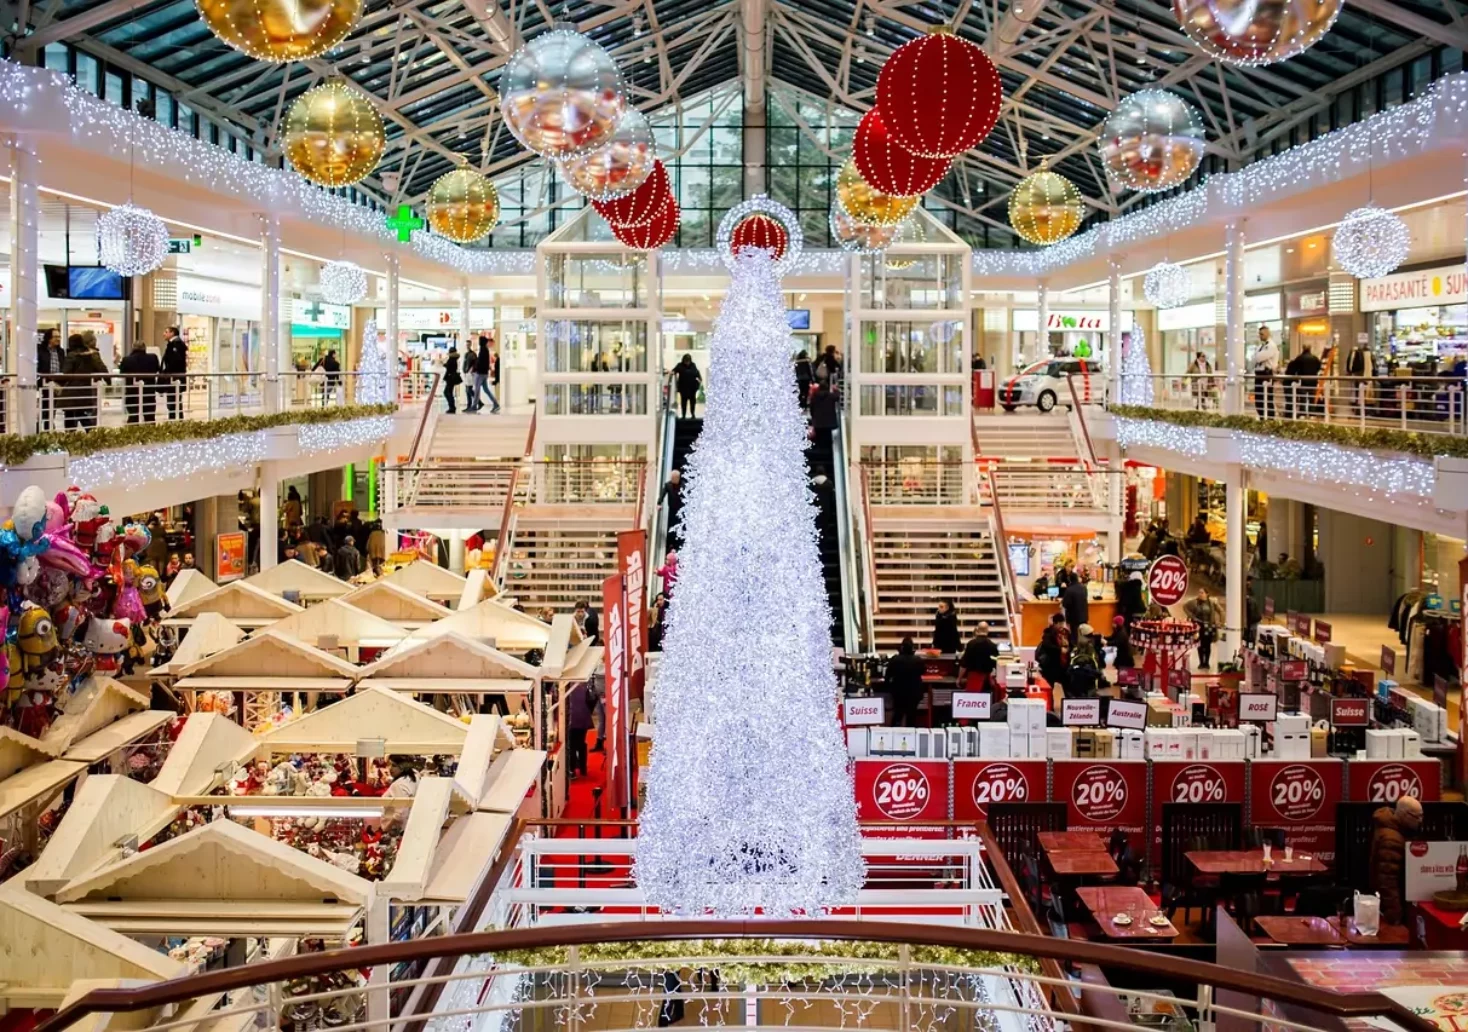 Foto in Beitrag von 5min.at: Zu sehen ist ein Einkaufszentrum in der Weihnachtszeit.